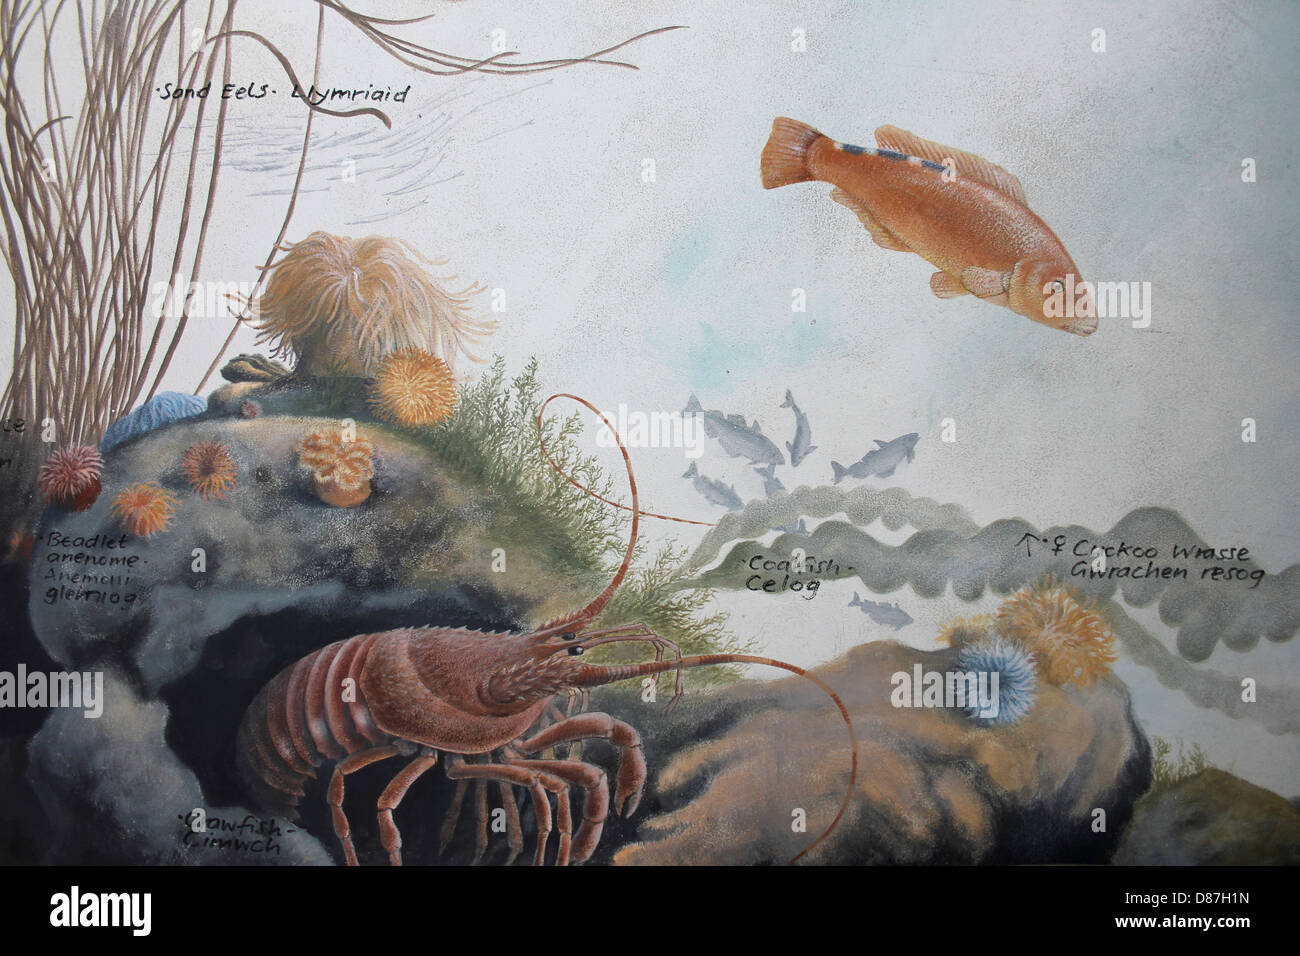 Pintura representando la vida marina en el Mar de Irlanda Foto de stock